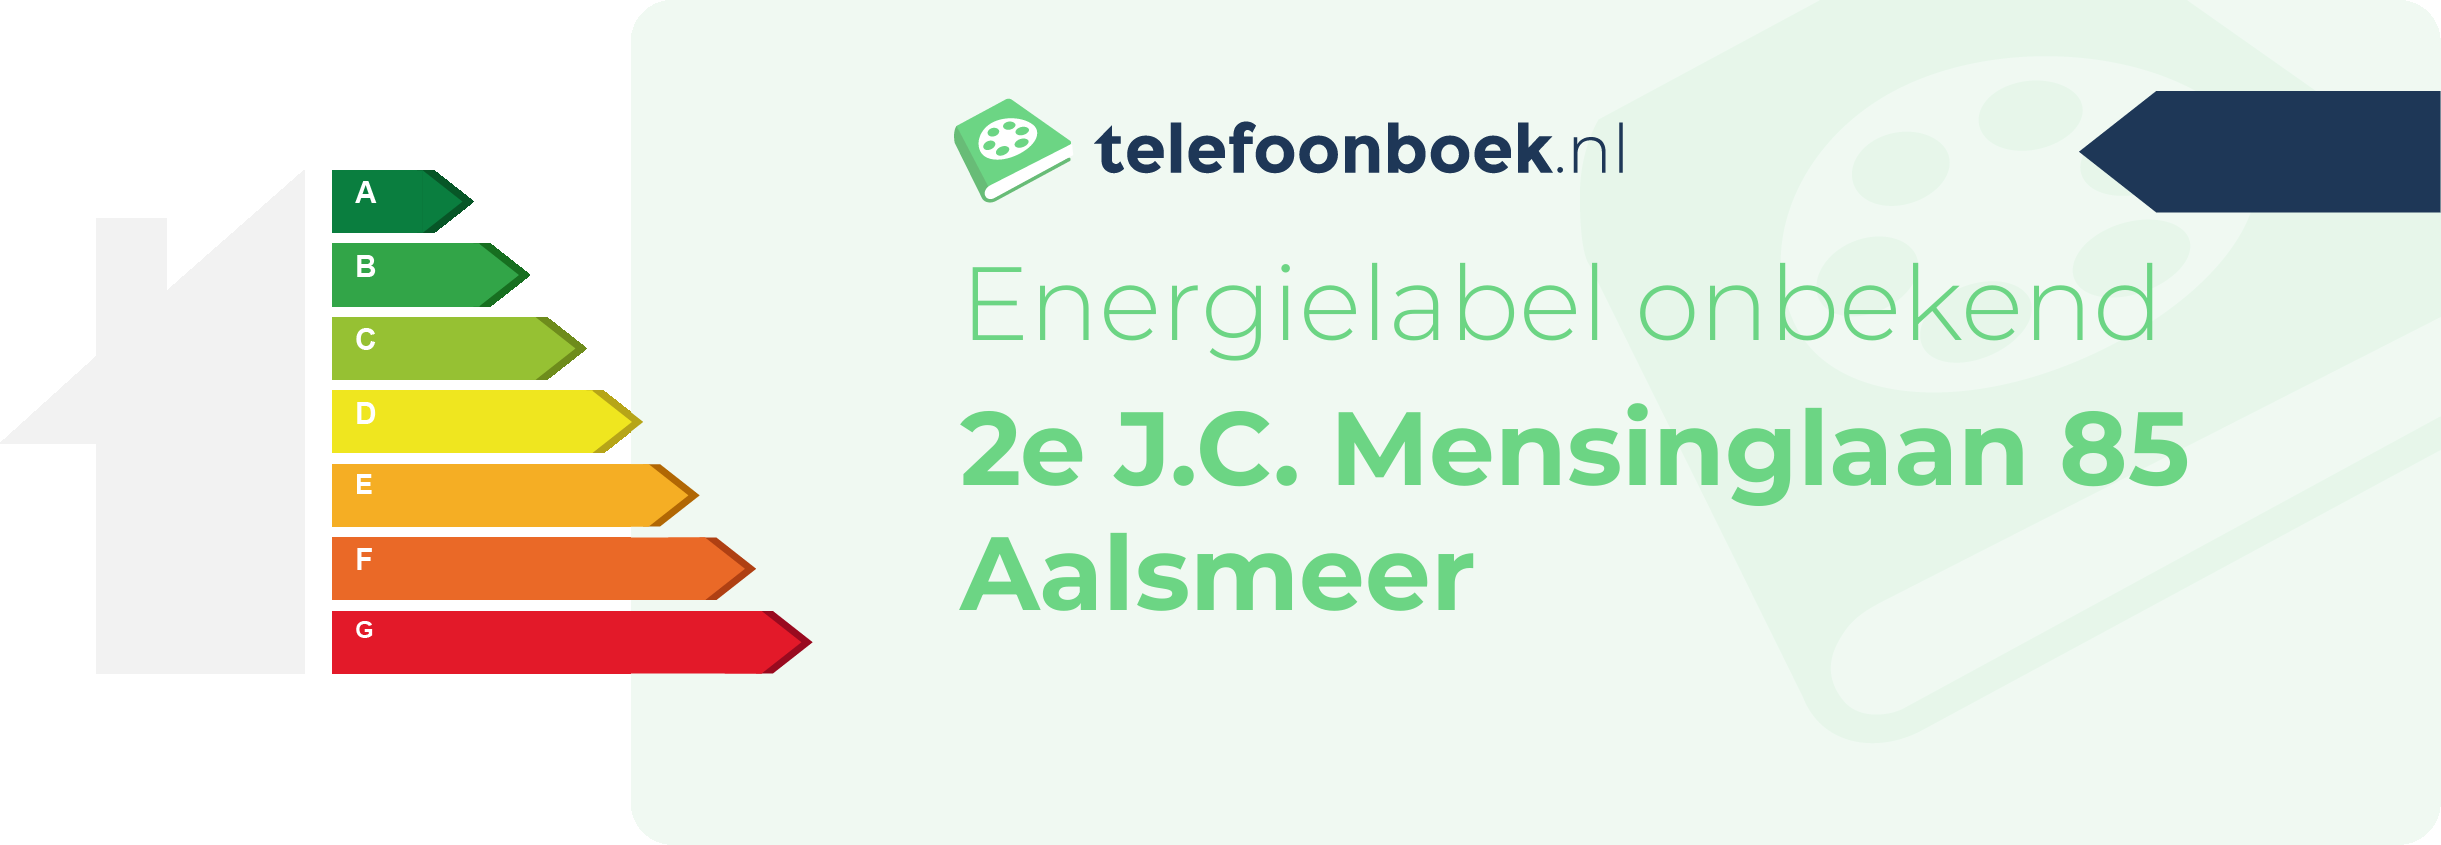 Energielabel 2e J.C. Mensinglaan 85 Aalsmeer